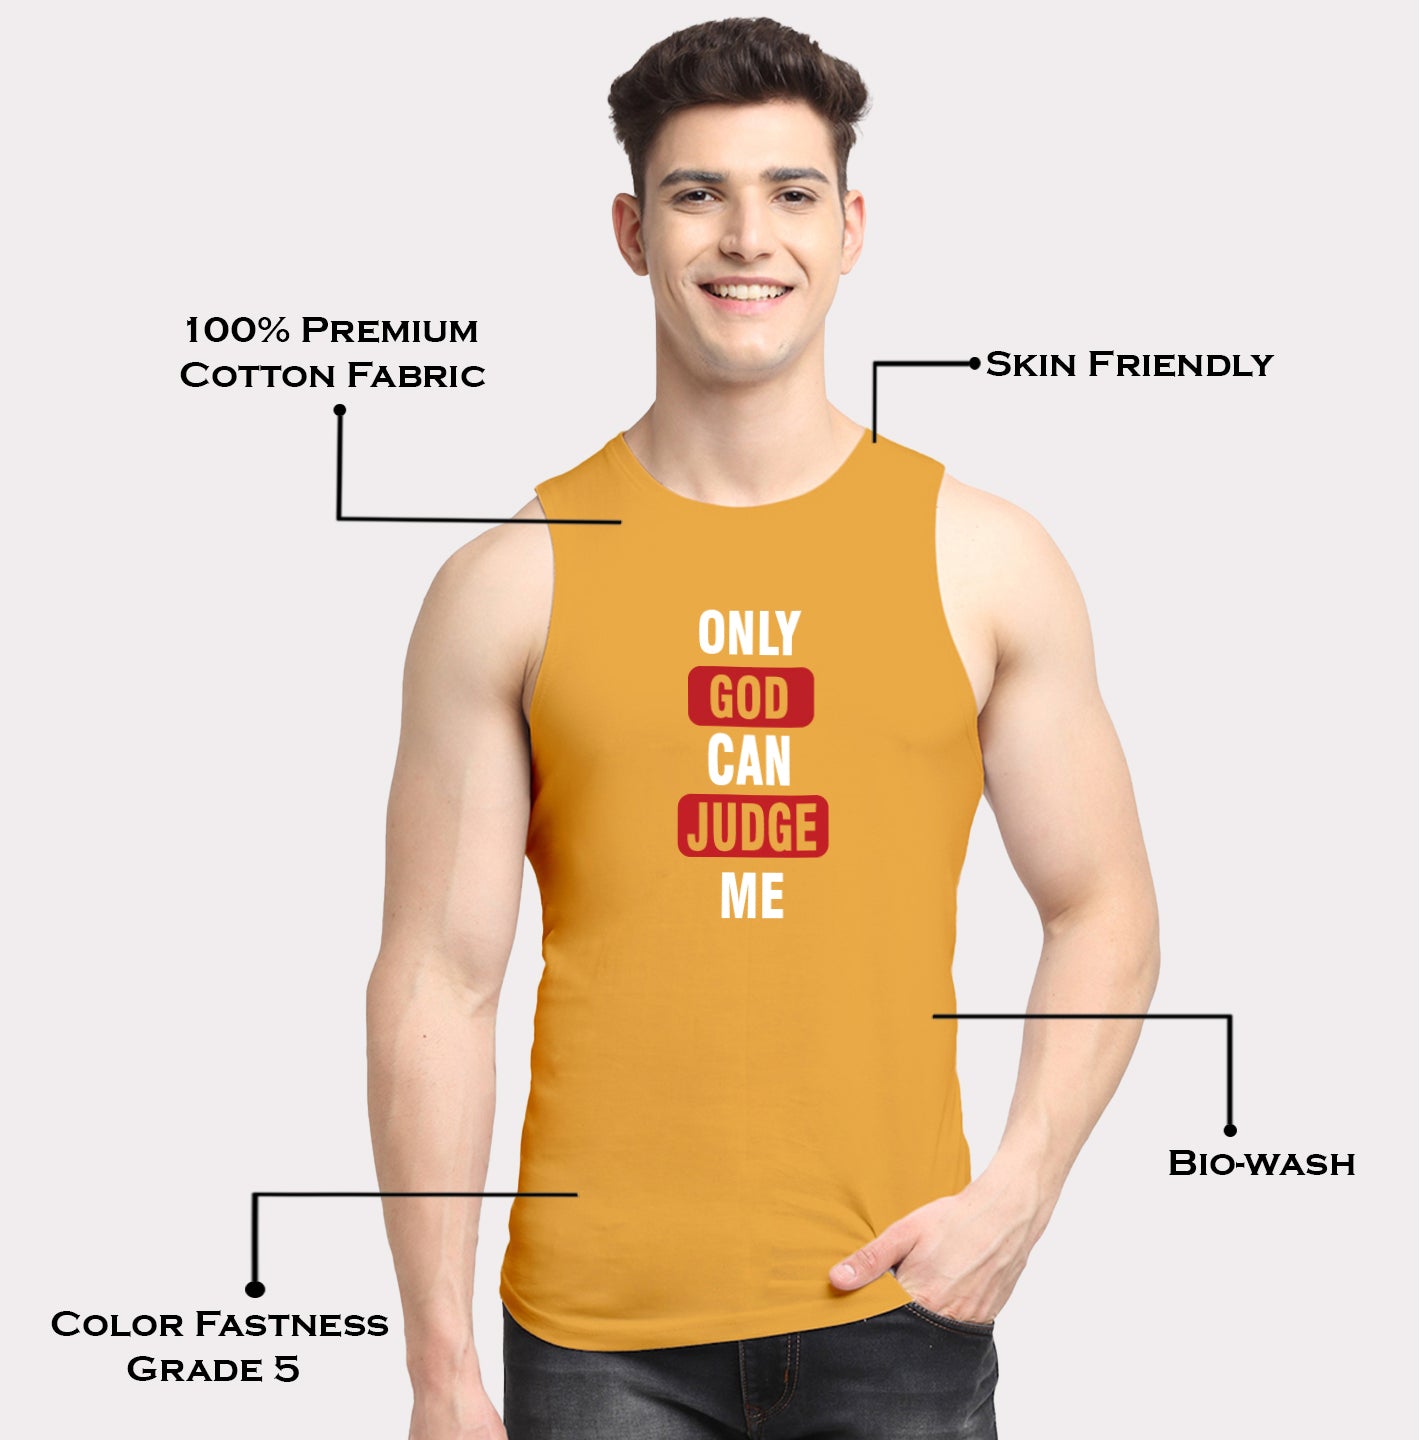 Men's Only God Can Judge Me Printed Round Neck Gym Vest - Friskers